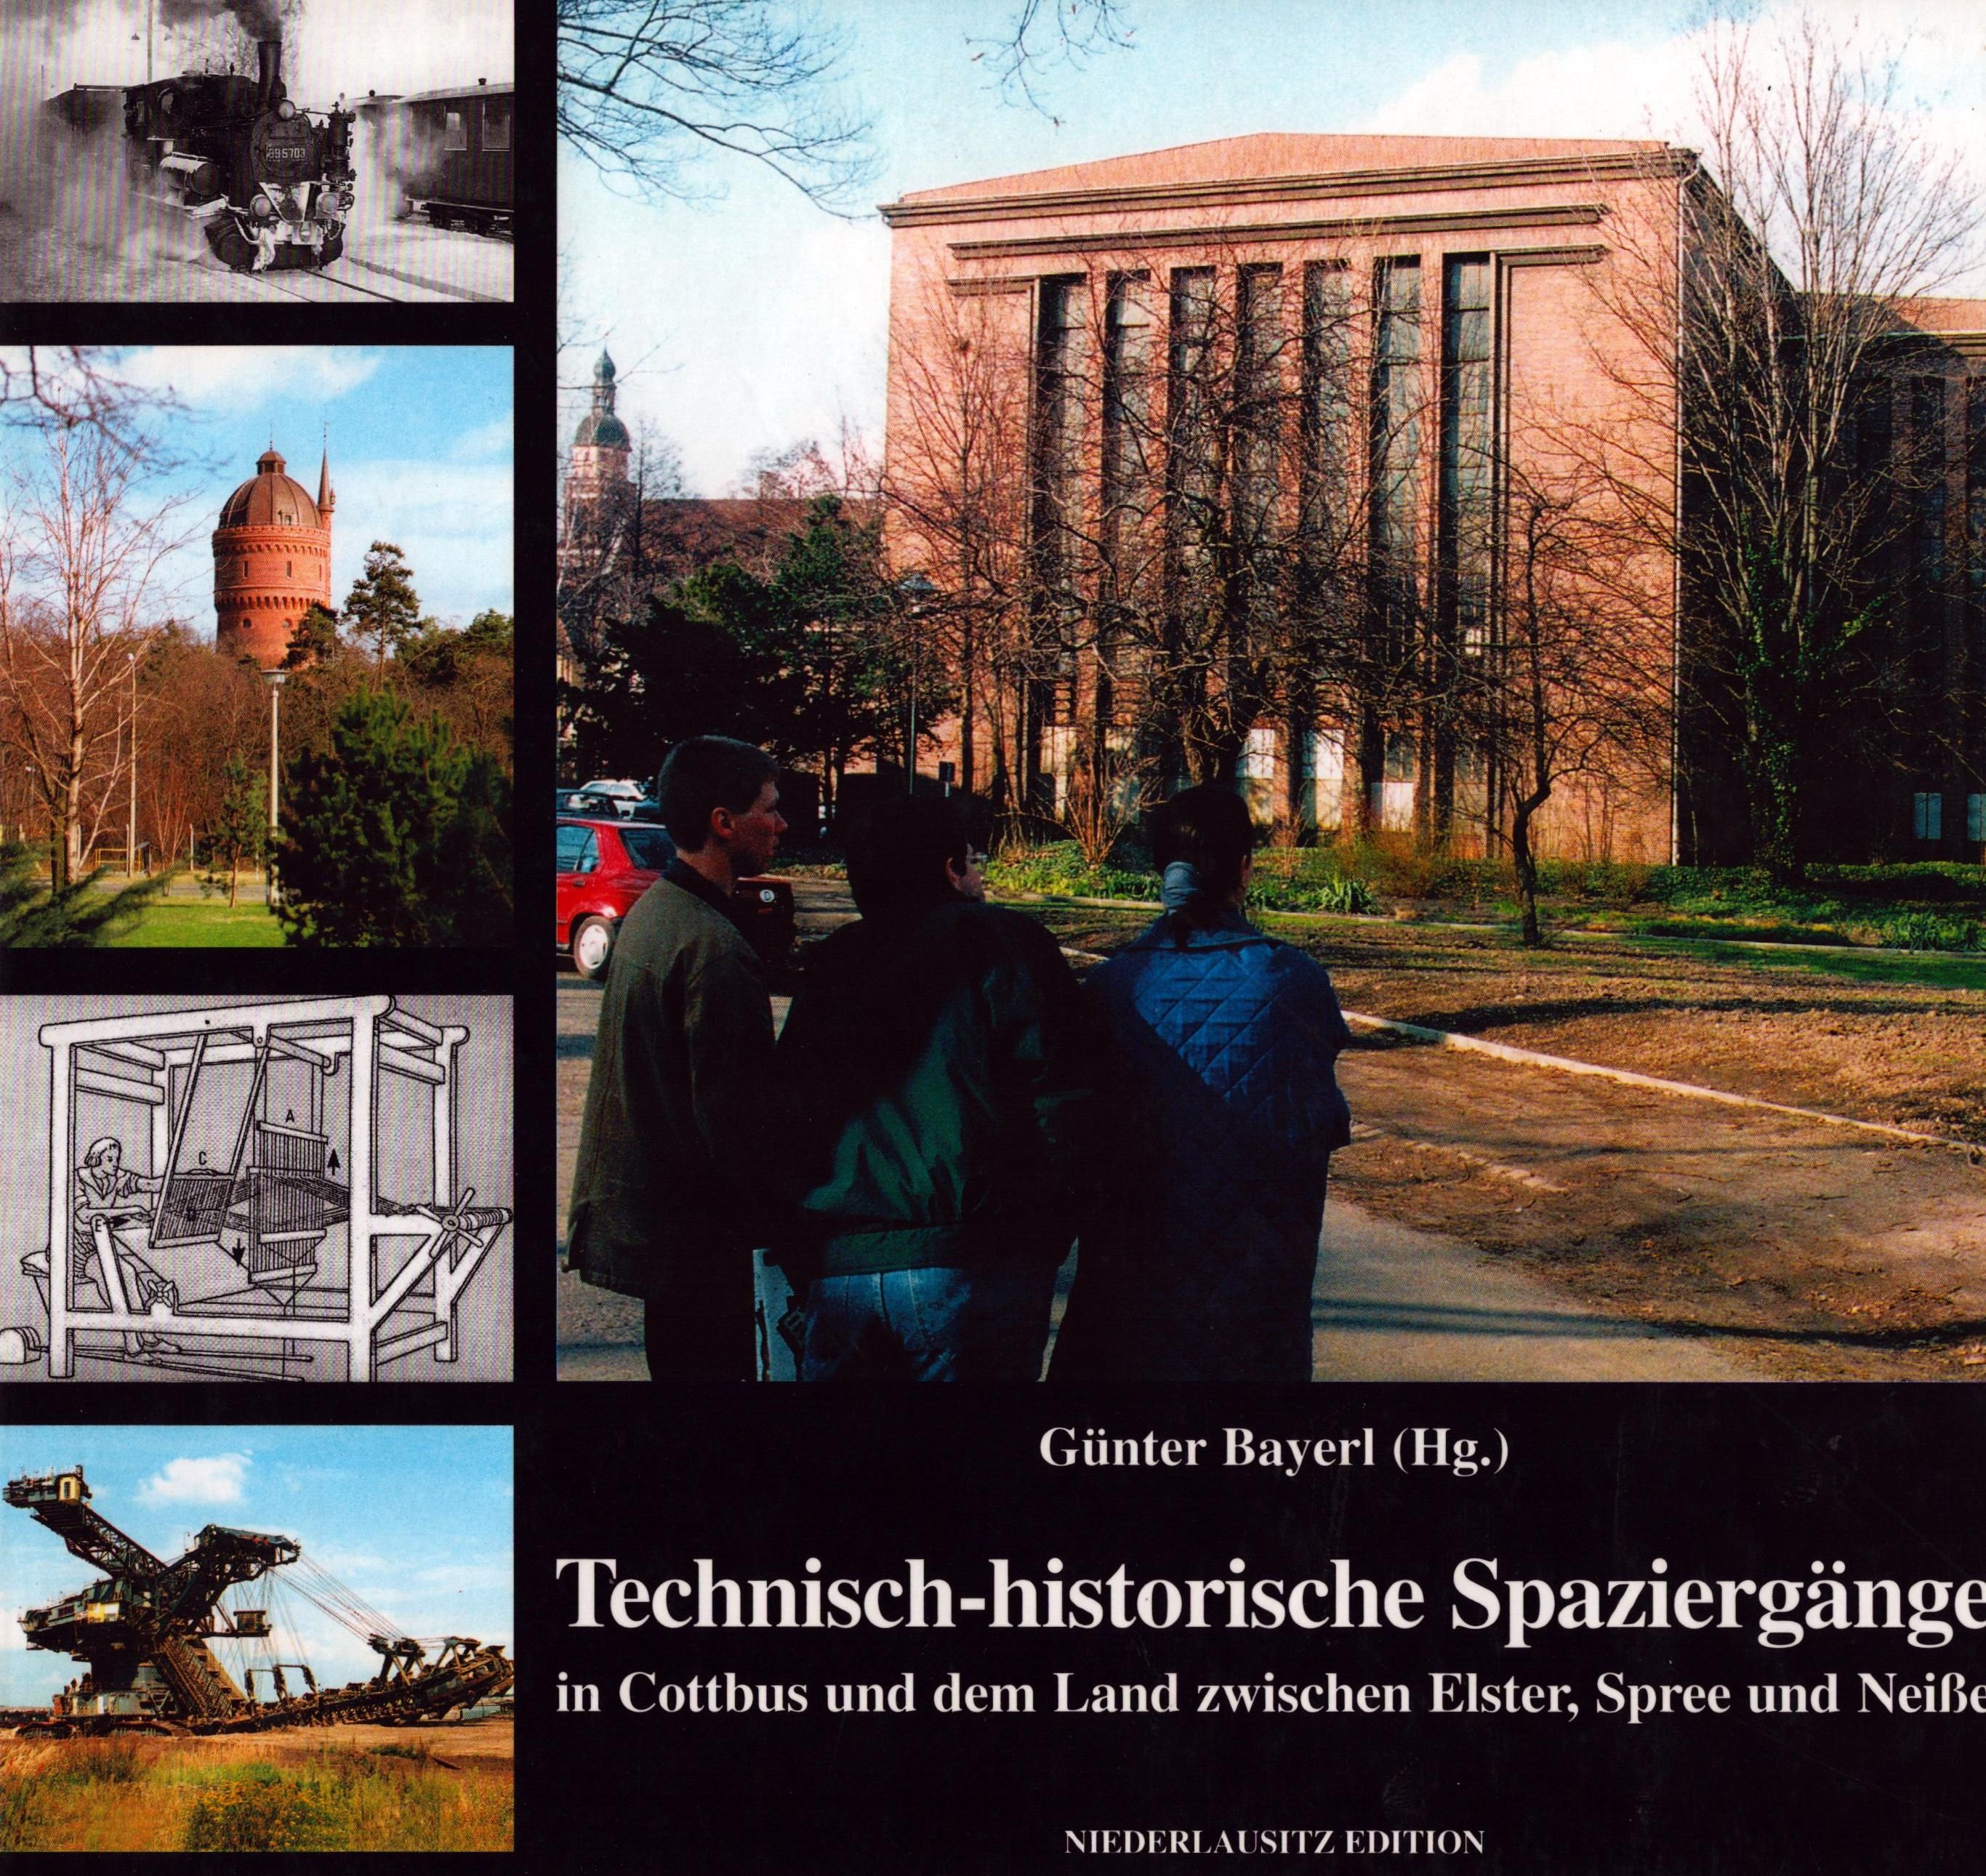 Technisch-historische Spaziergänge in Cottbus und dem Land zwischen Elster, Spree und Neiße (Archiv SAXONIA-FREIBERG-STIFTUNG CC BY-NC-SA)